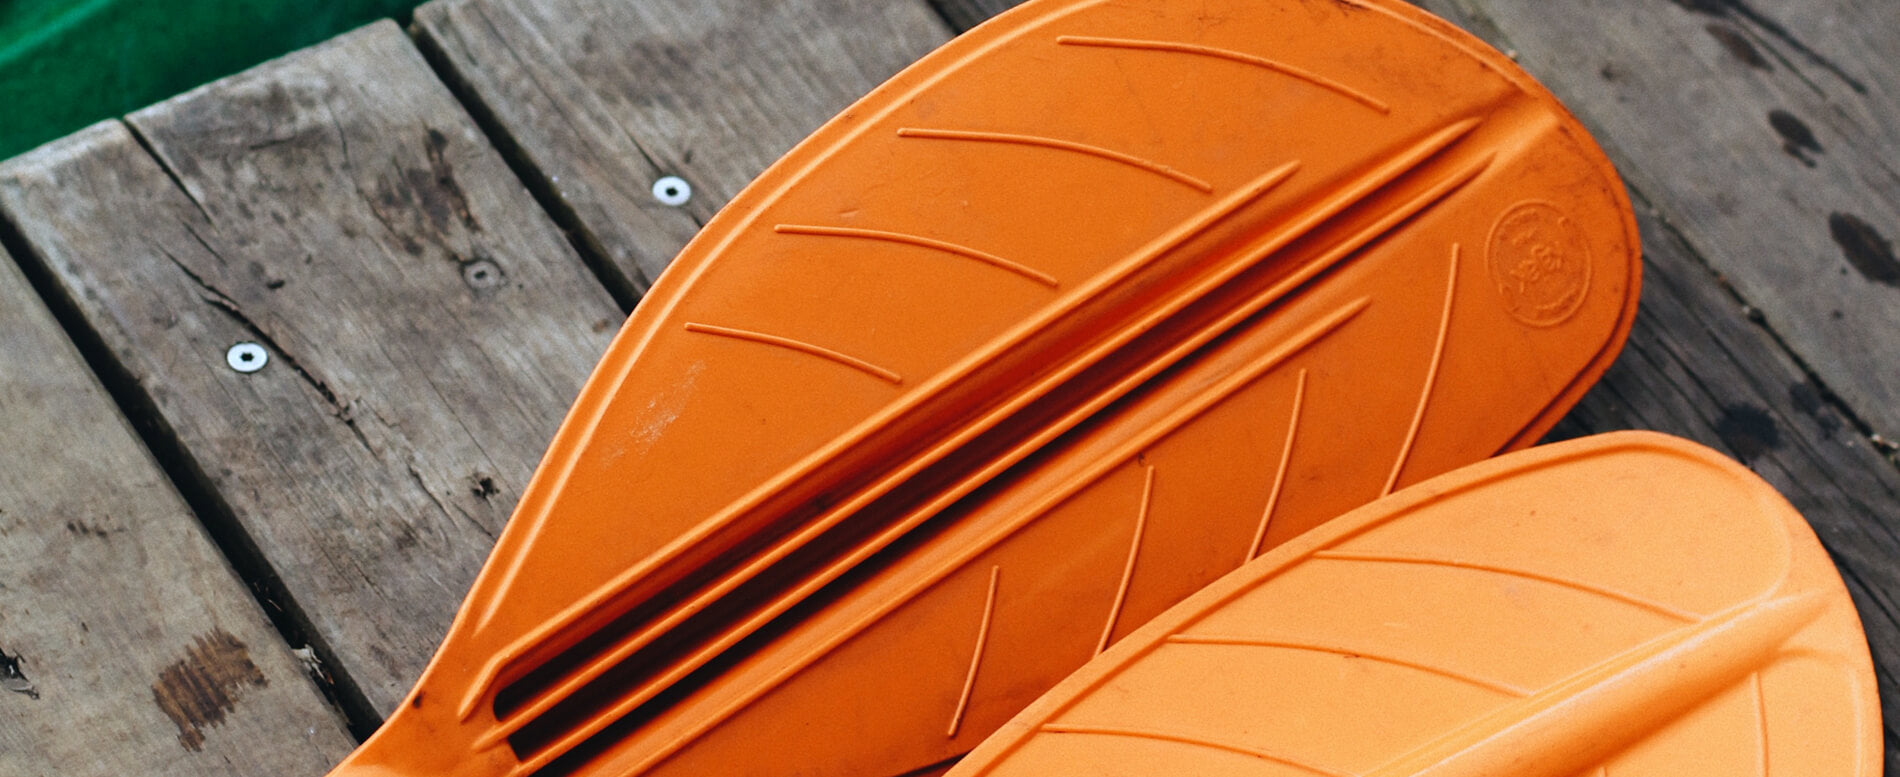 Orange kayak blade